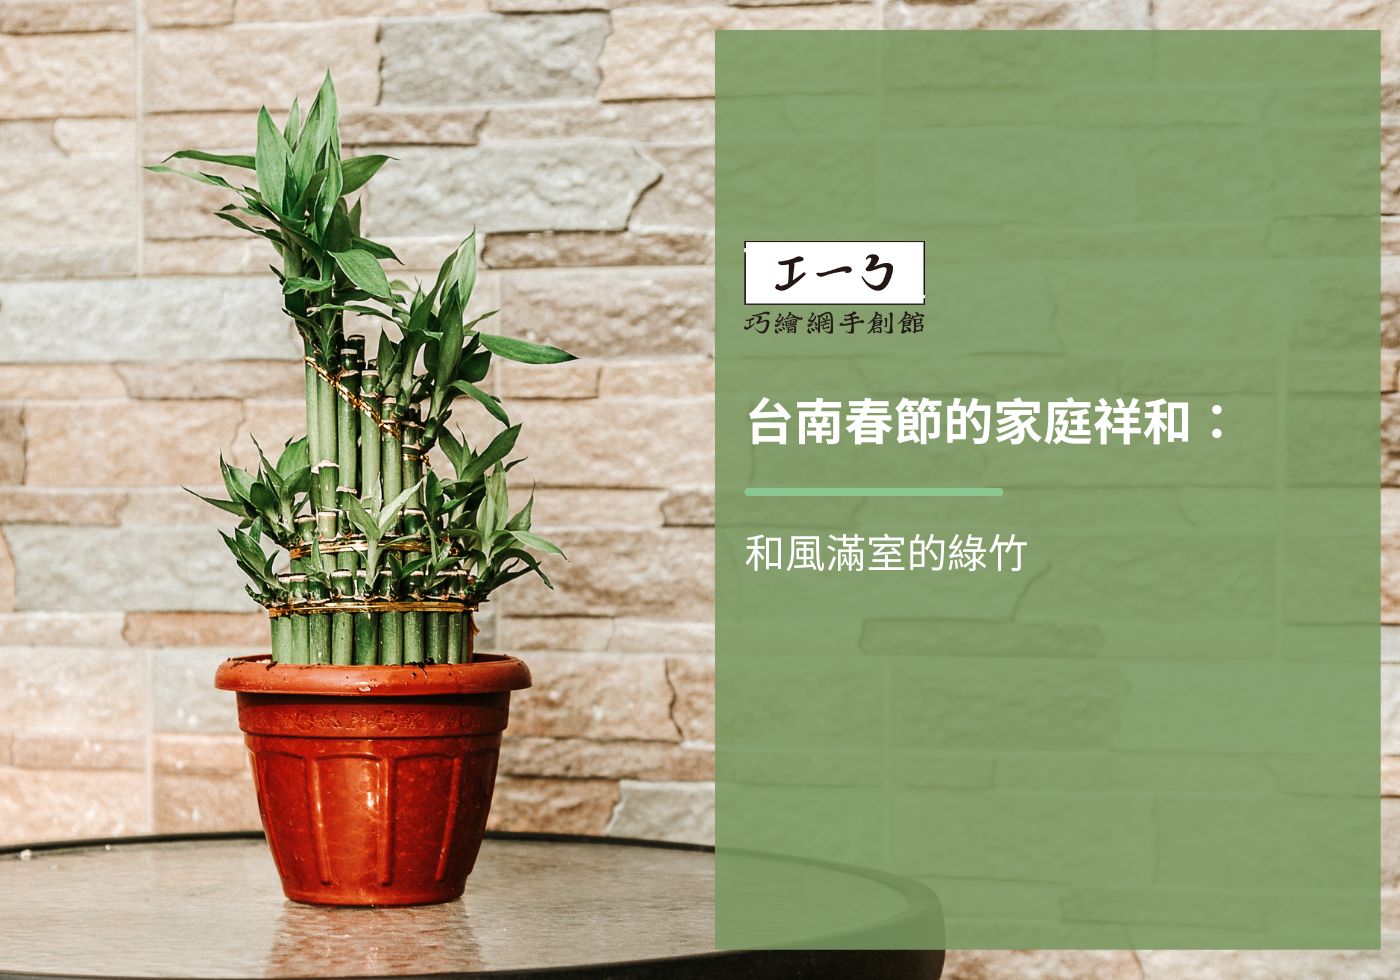 閱讀更多文章 台南春節的家庭祥和：和風滿室的綠竹